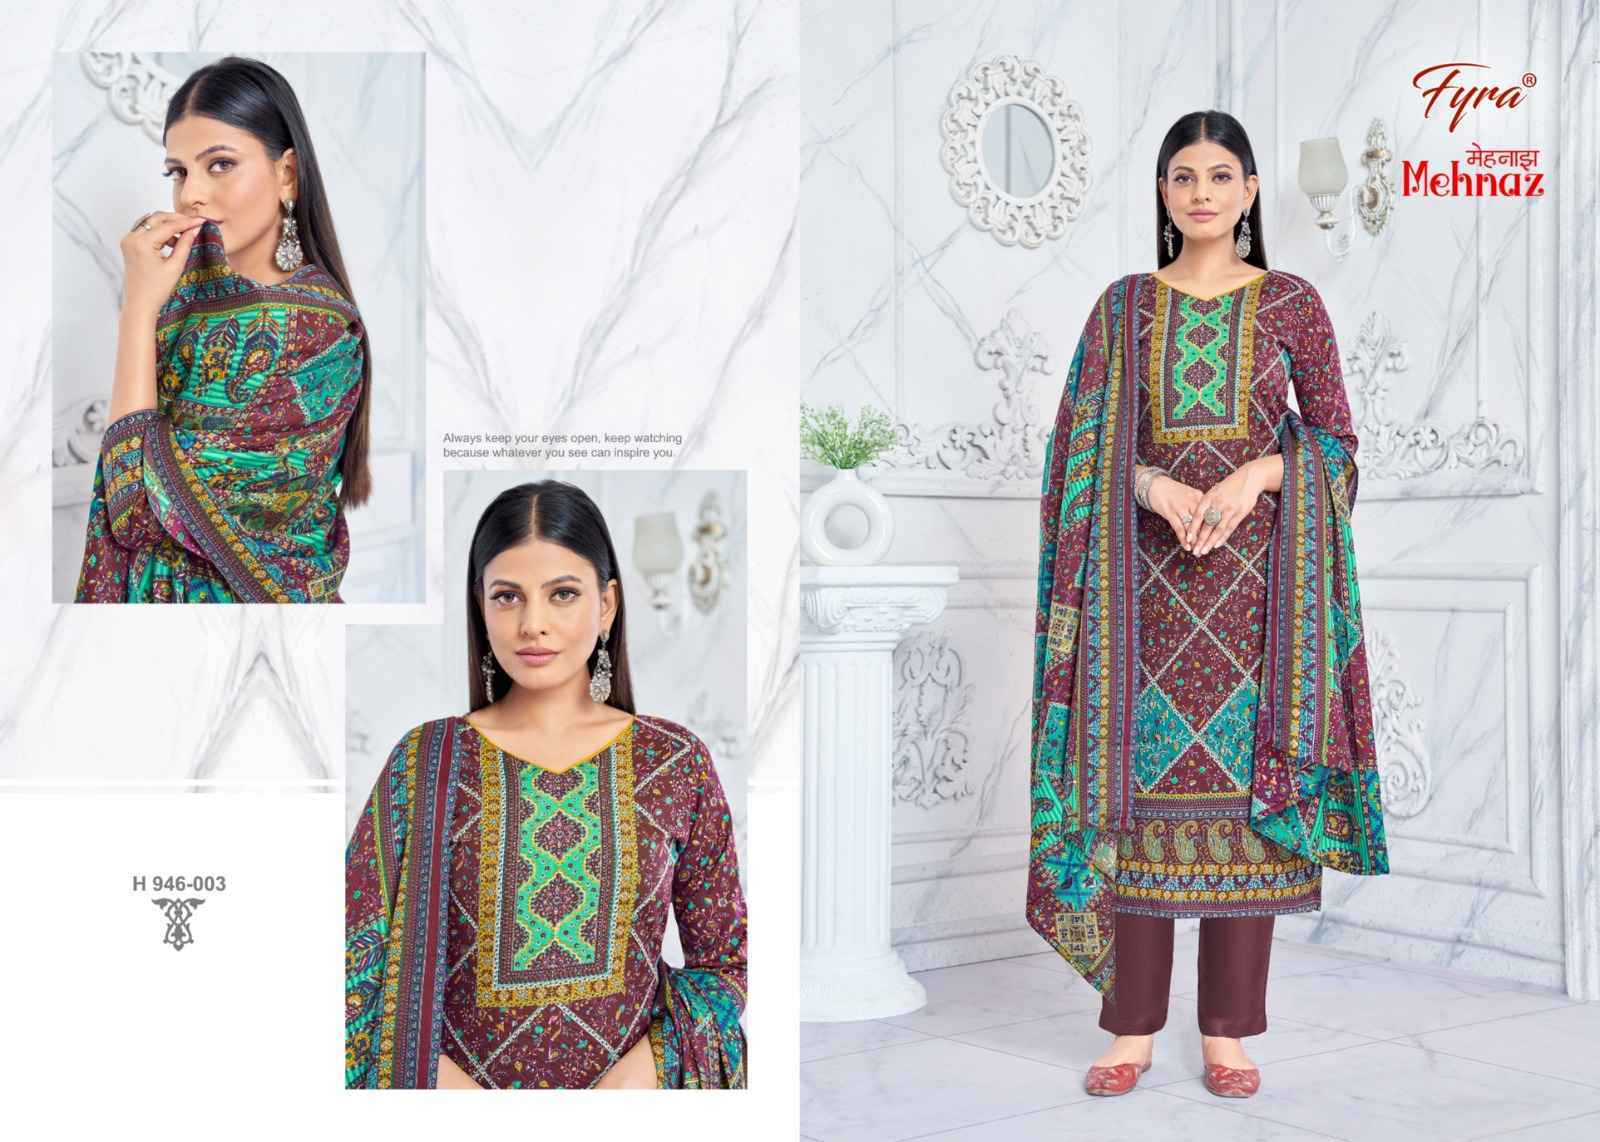 Fyra Mehnaz Pashmina Dress Material 8 pcs Catalogue - Surat Wholesale Market